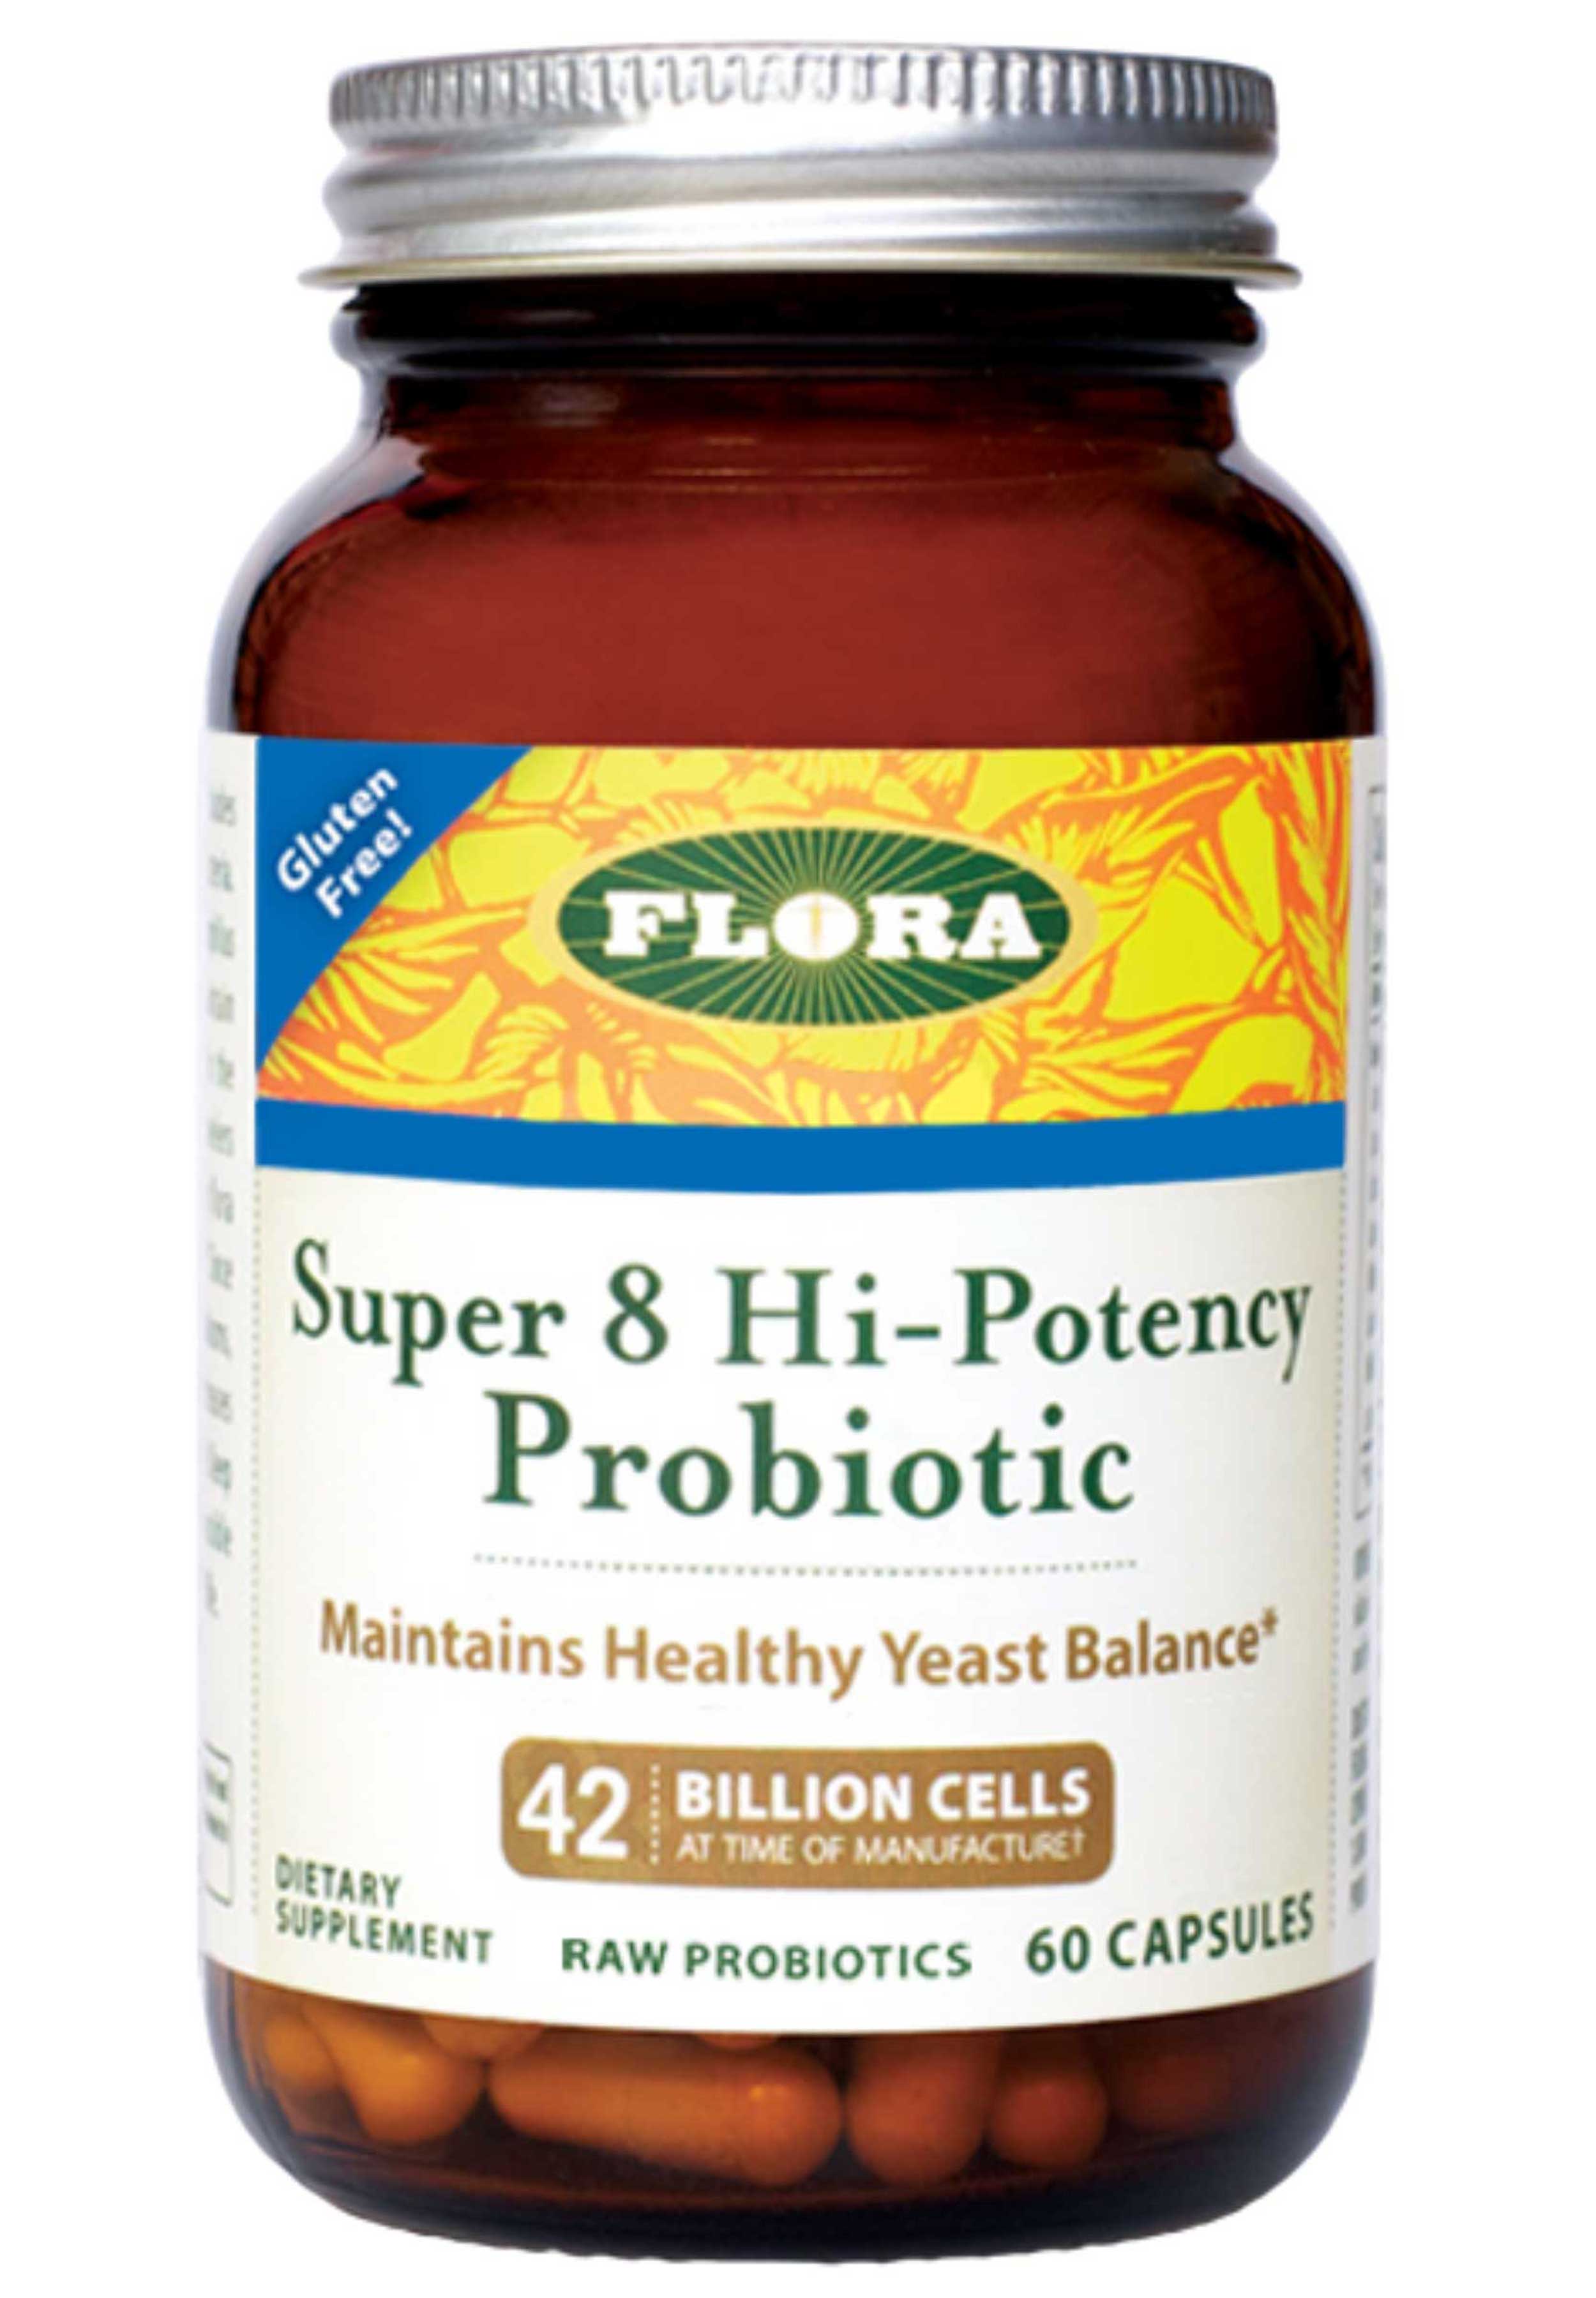 Flora Super 8 Hi-Potency Probiotic